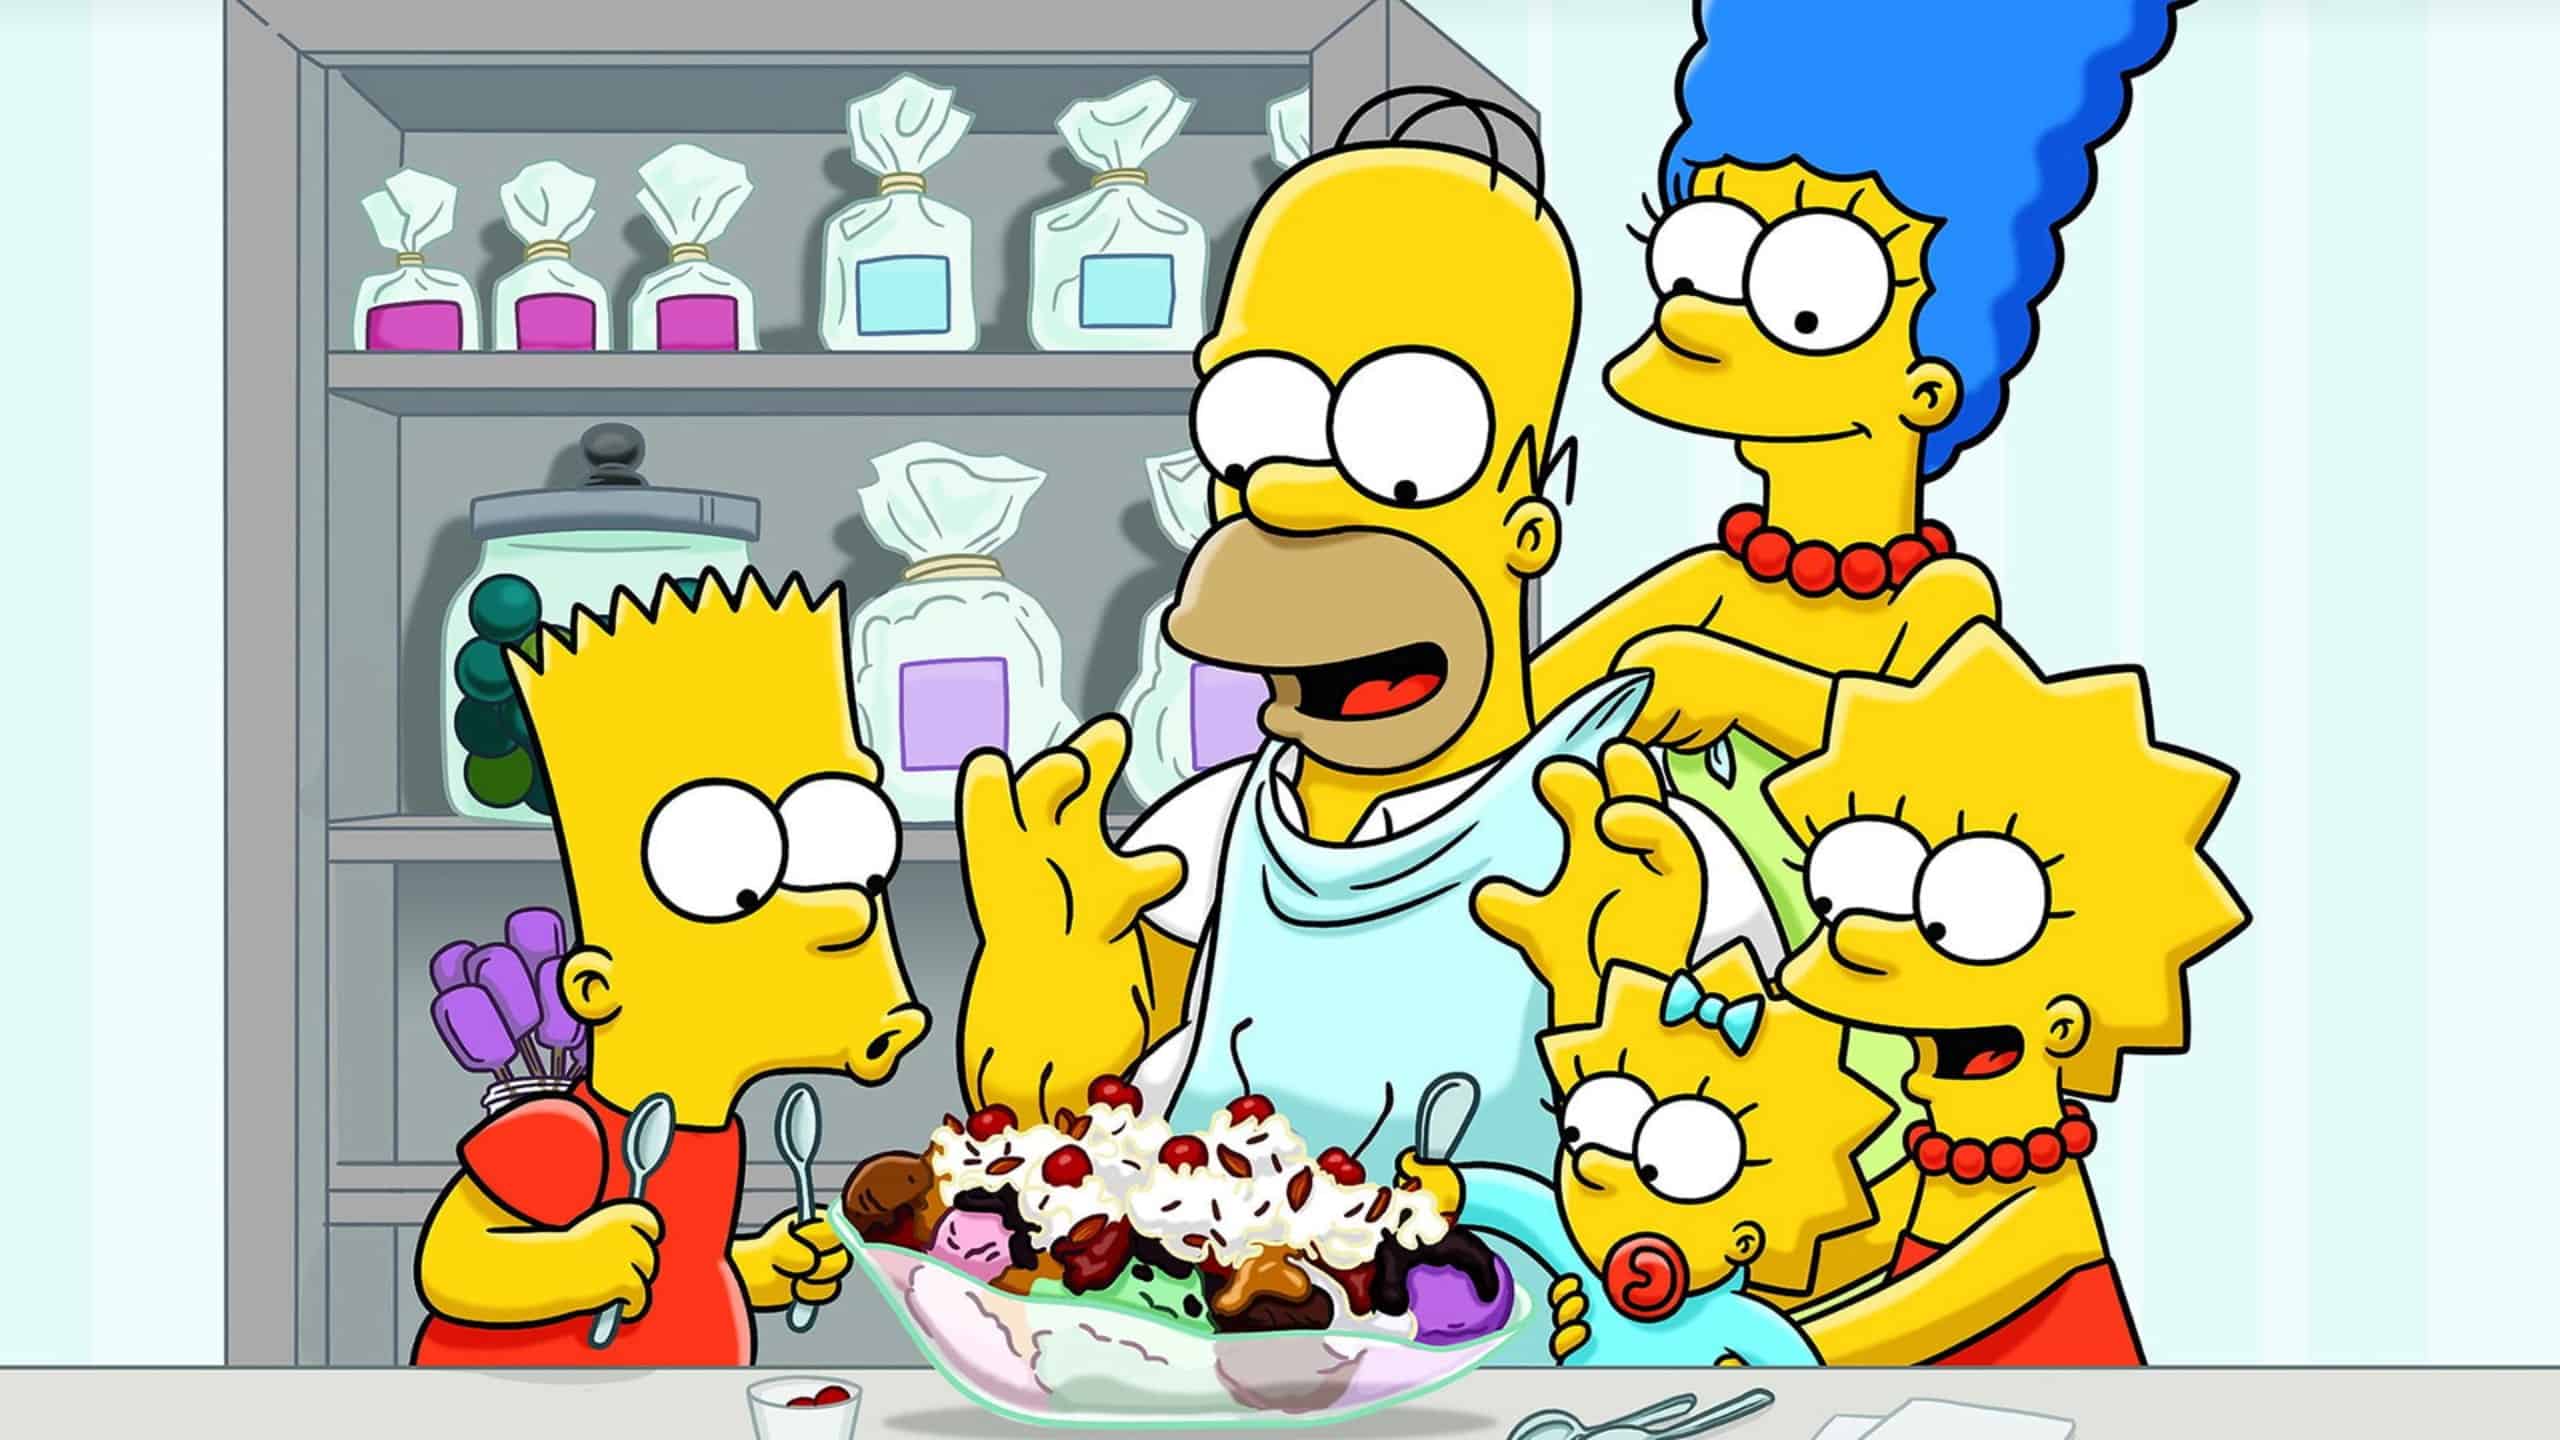 La famille Simpson déguste et partage une glace dans la cuisine.